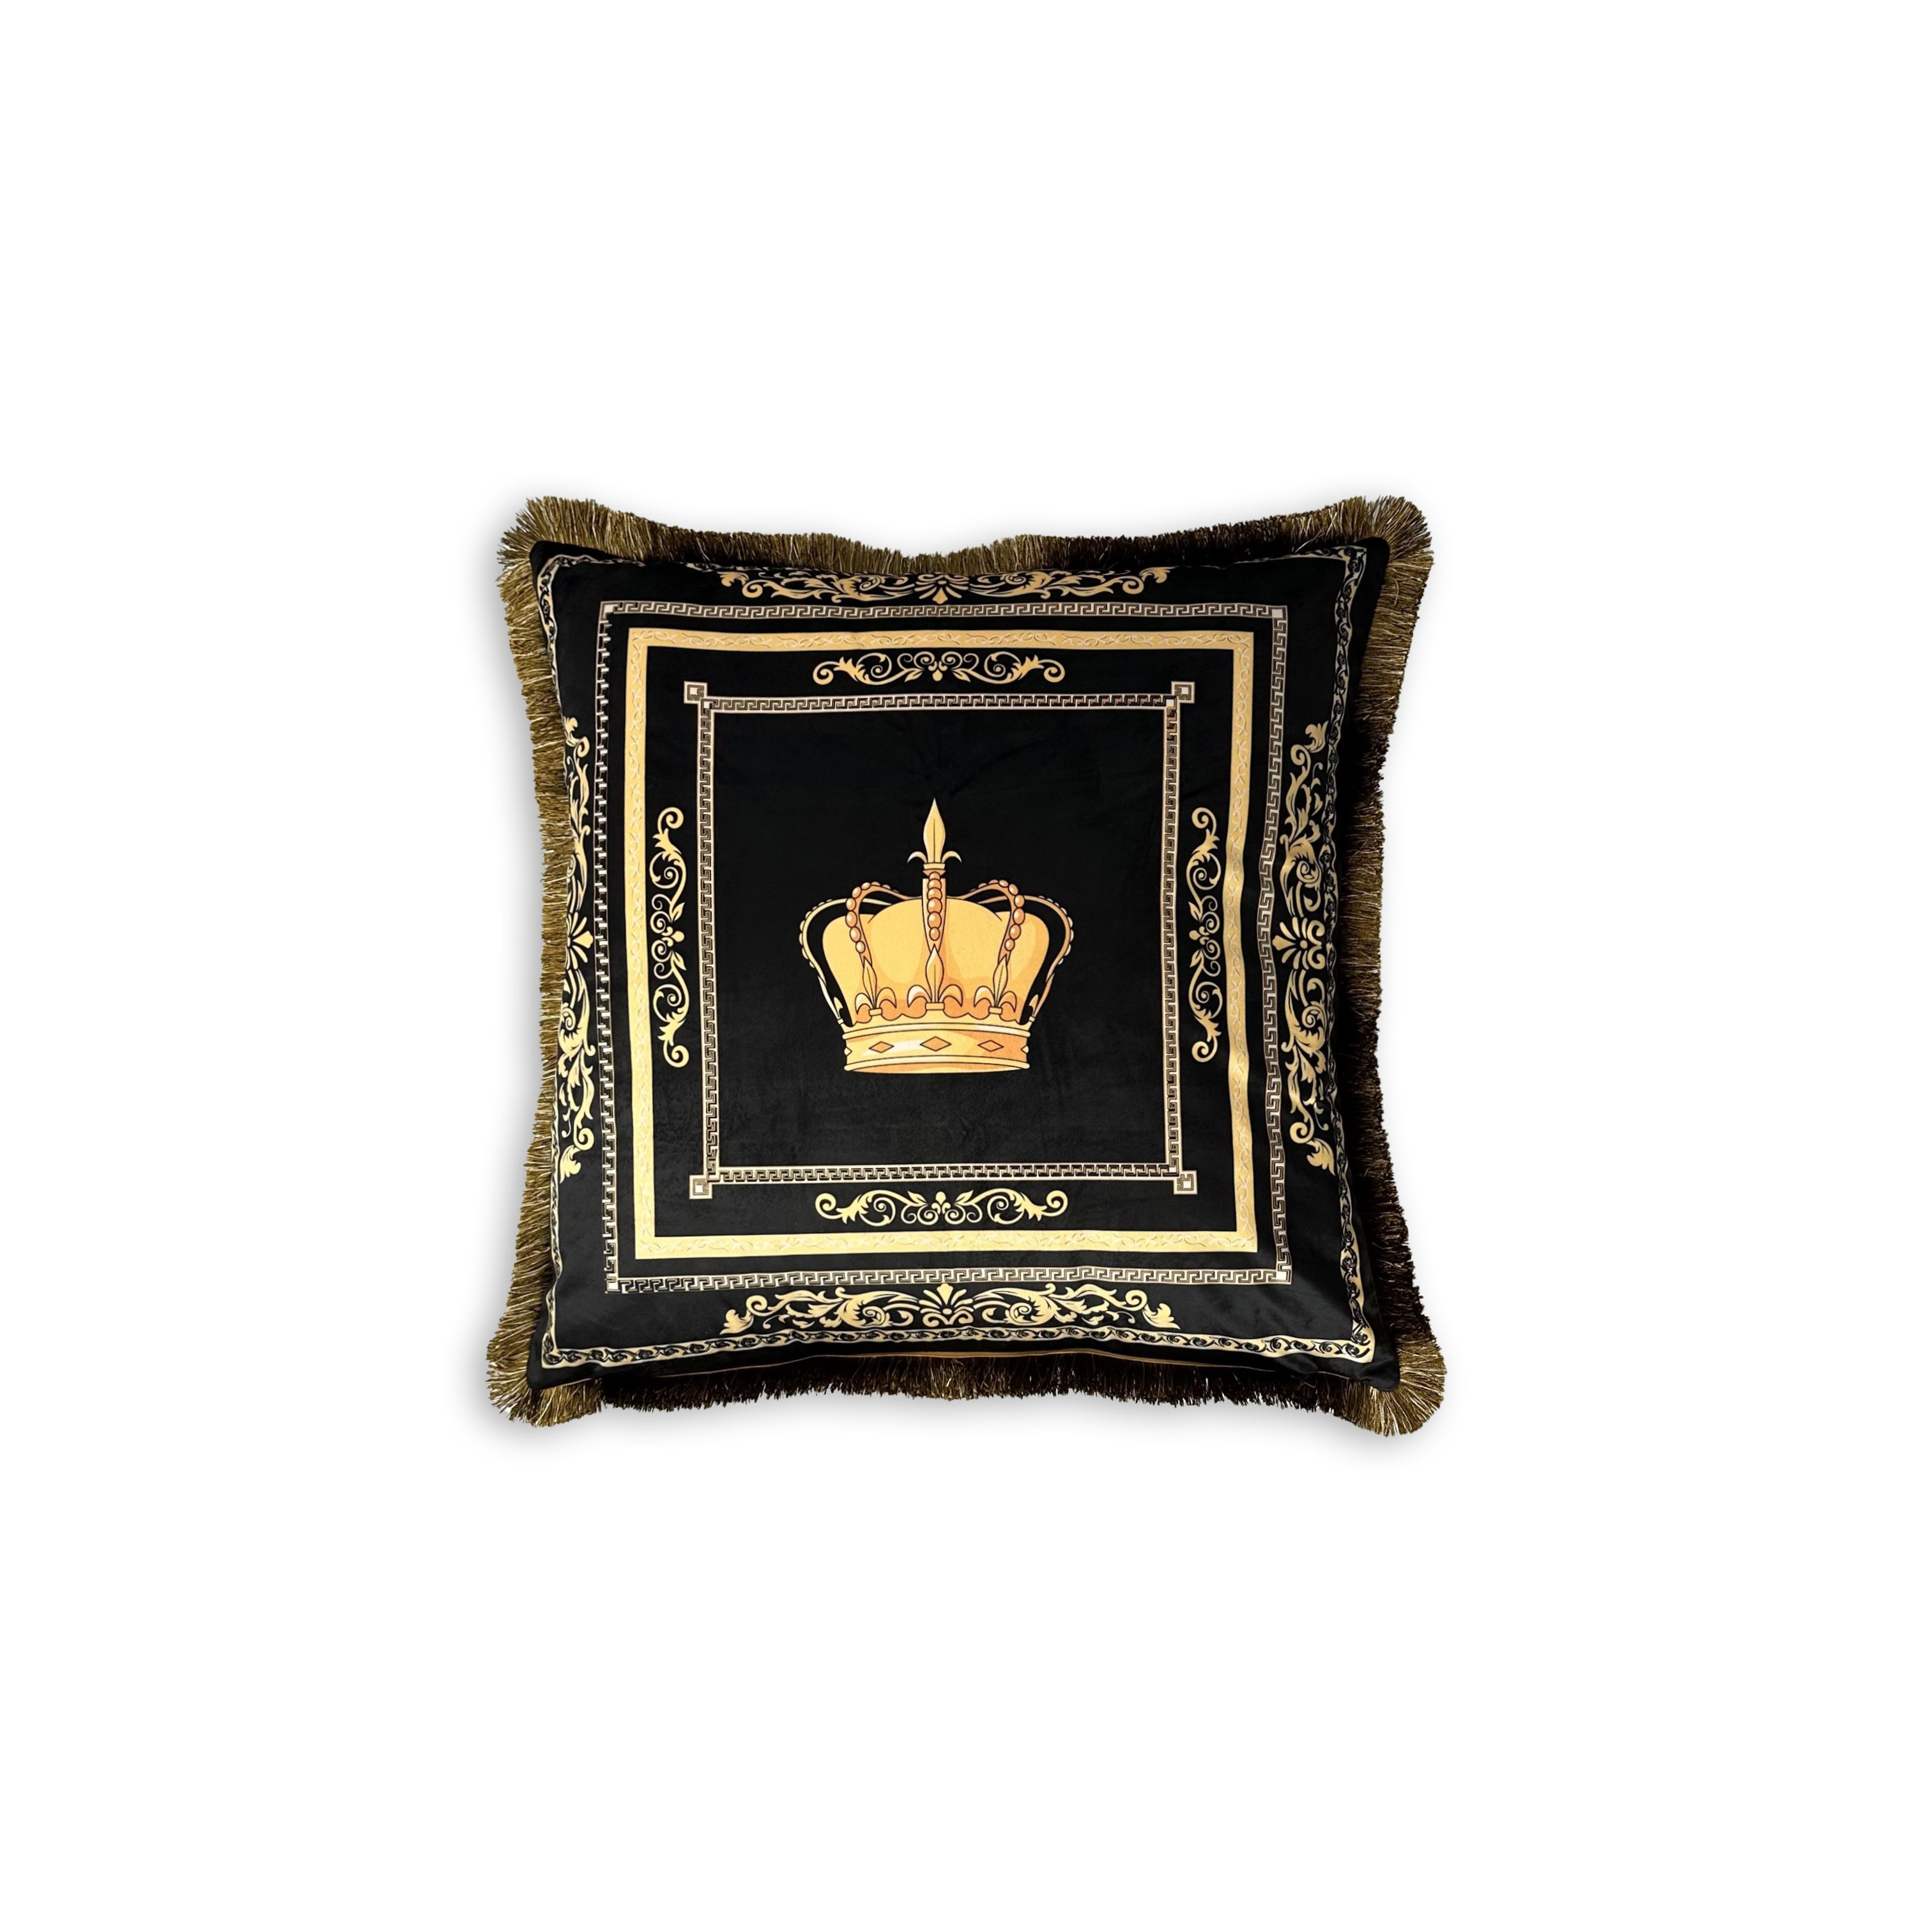 Dekorative Kissen mit Kissenbezug und Royal Motiv Krone schwarz gold in Seidenoptik